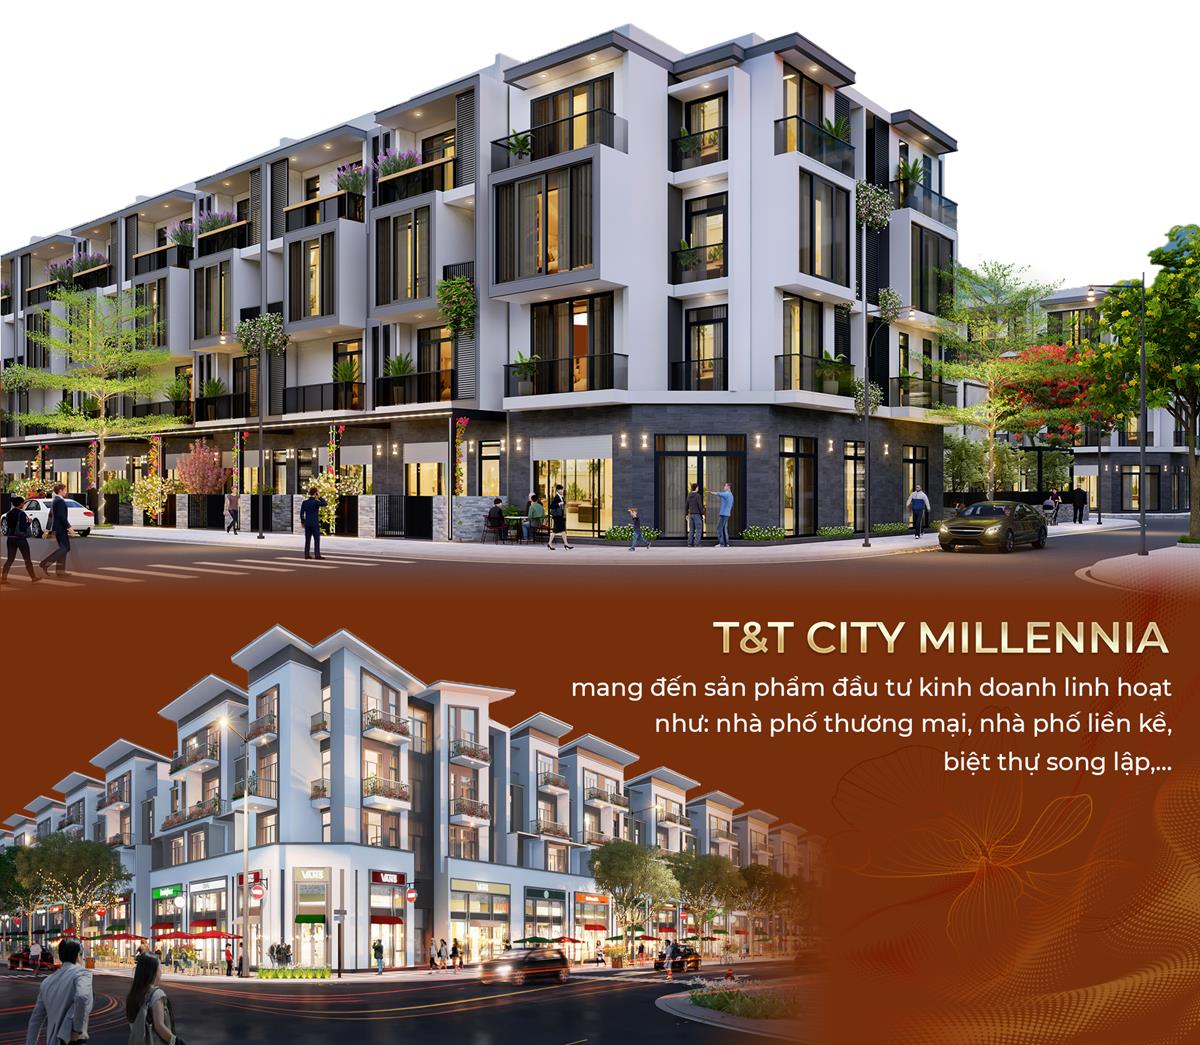 T&T City Millennia - Đại đô thị sầm uất ngay cửa ngõ Nam Sài Gòn - Ảnh 6.